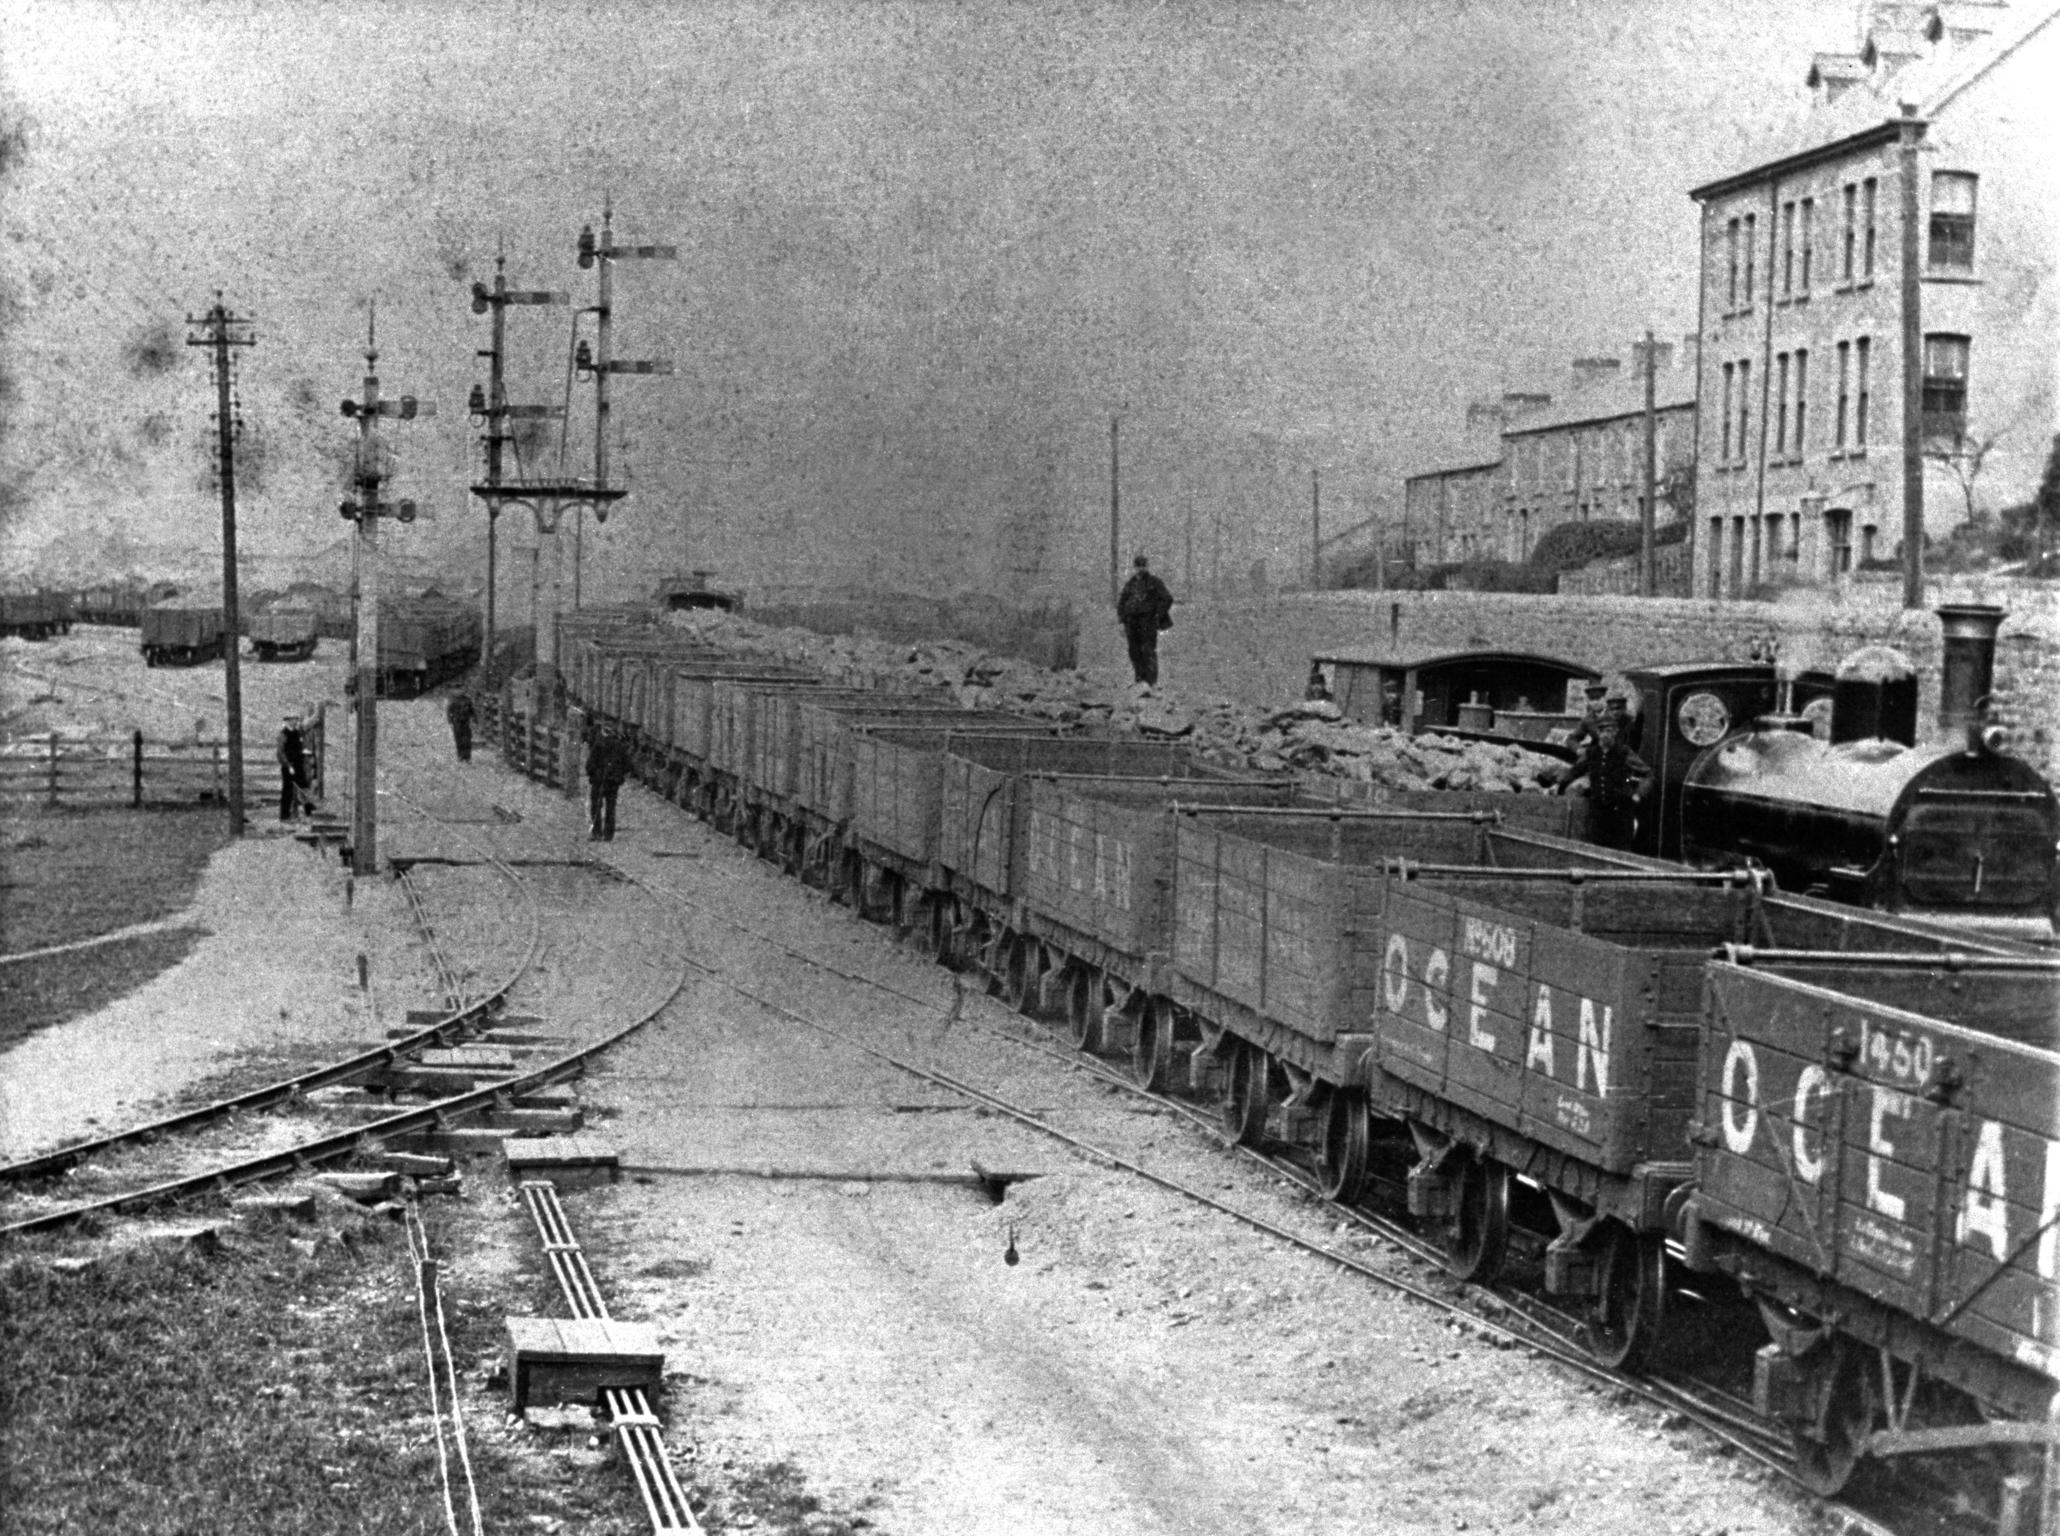 Coal sidings, photograph